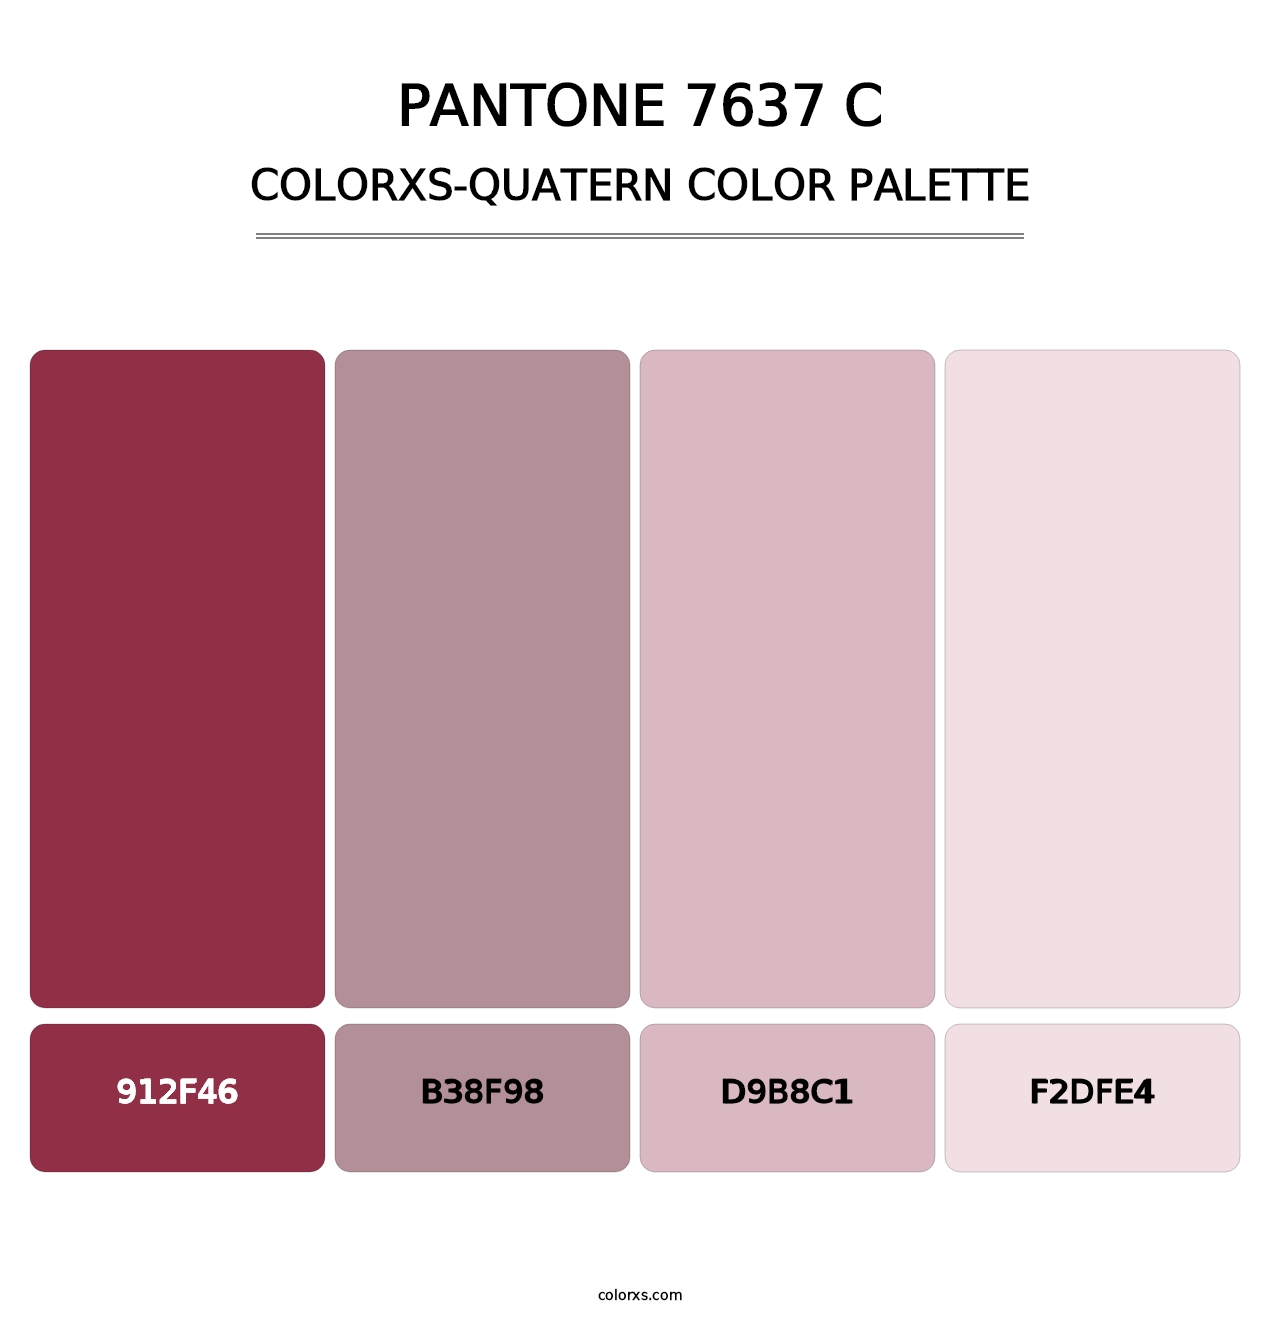 PANTONE 7637 C - Colorxs Quatern Palette